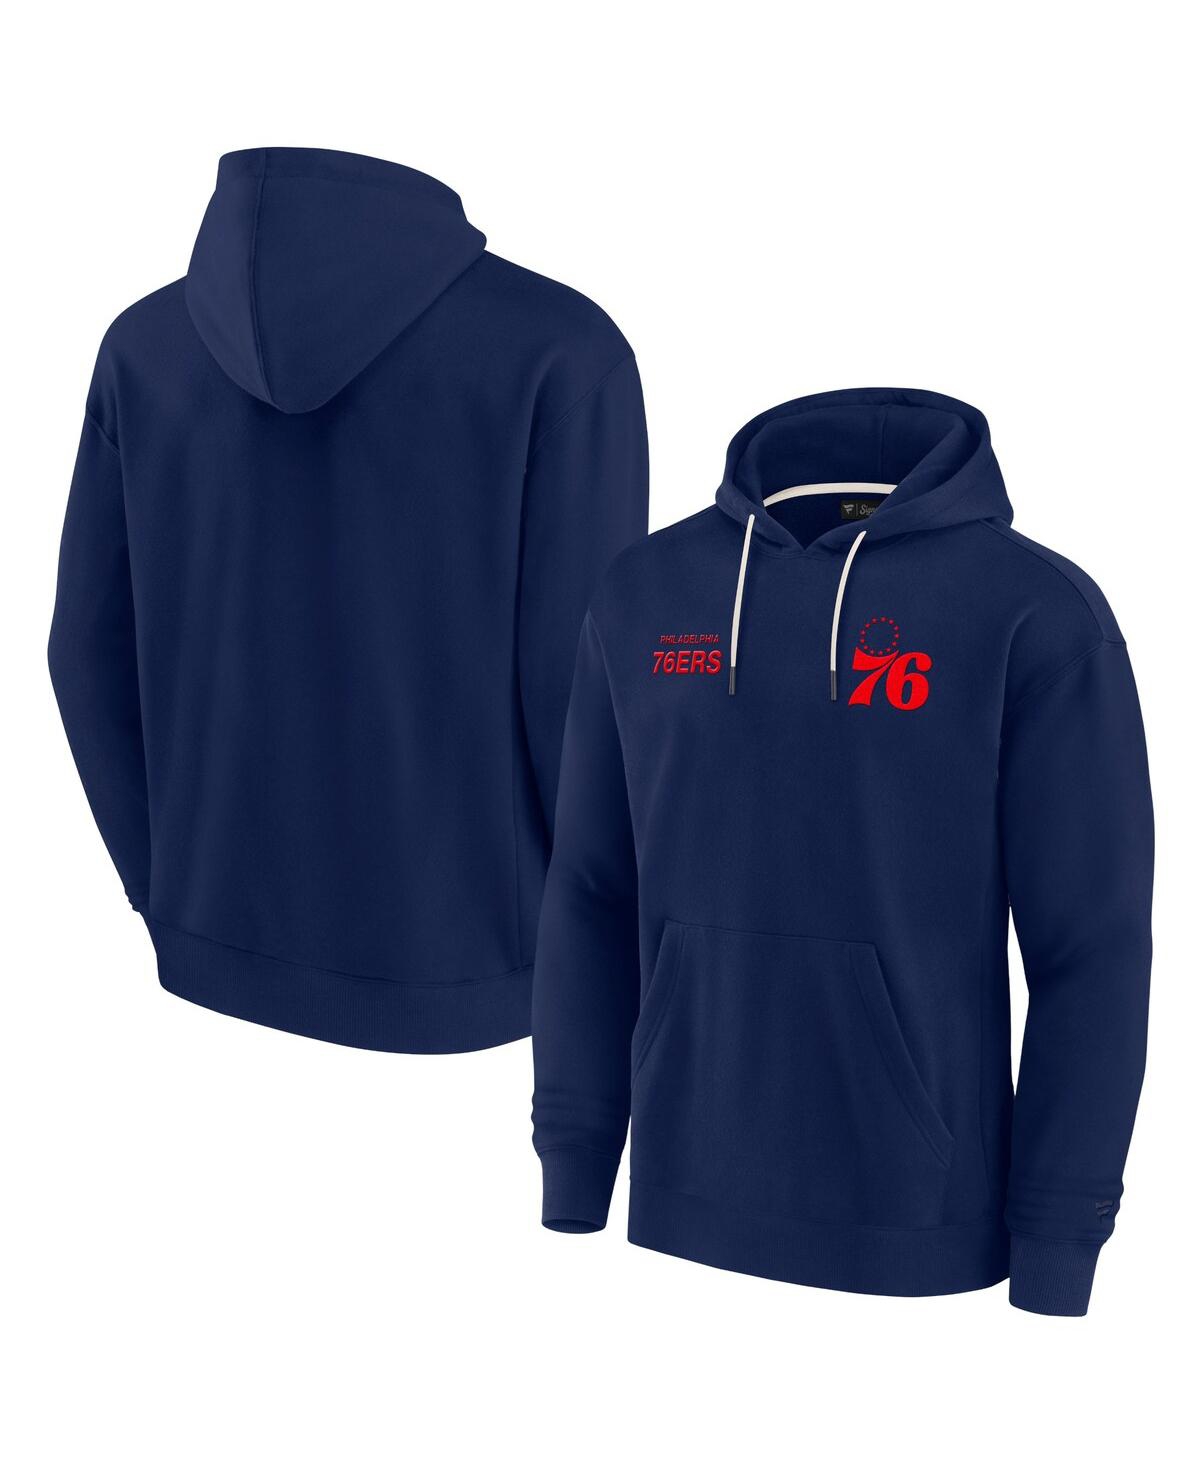 Men's and Women's Philadelphia 76ers Elements Super Soft Fleece Pullover Hoodie - Navy